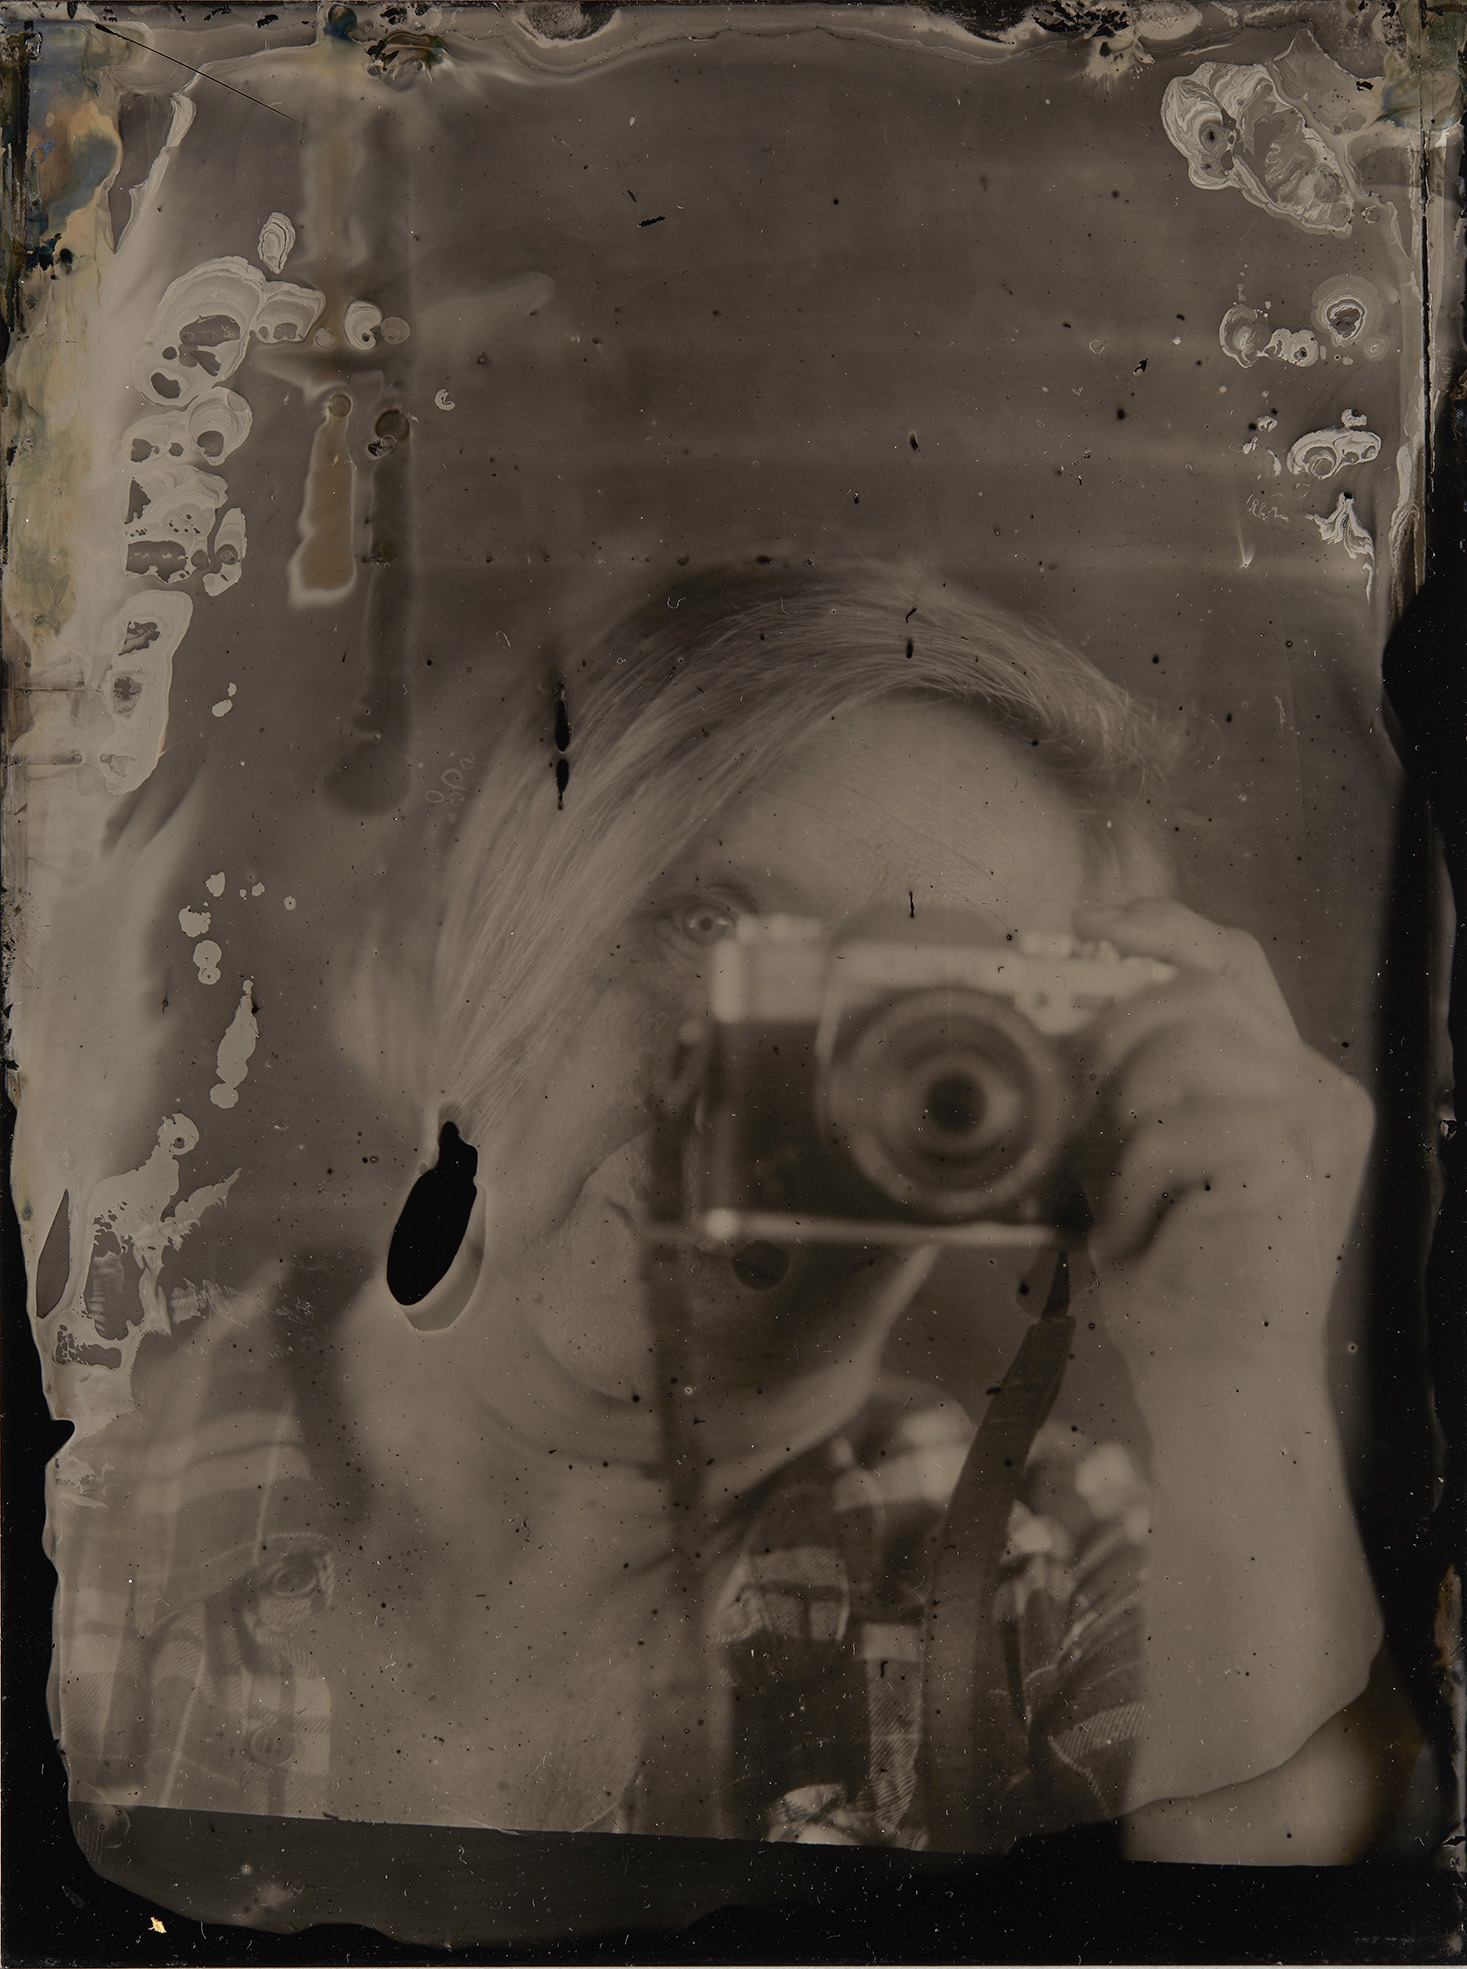 Metallilevylle valotettu mustavalkoinen kuva, jossa näkyvät valoherkkien kemioiden jäljet. Kuva esittää kamera kädessä kuvaavaa henkilöä.